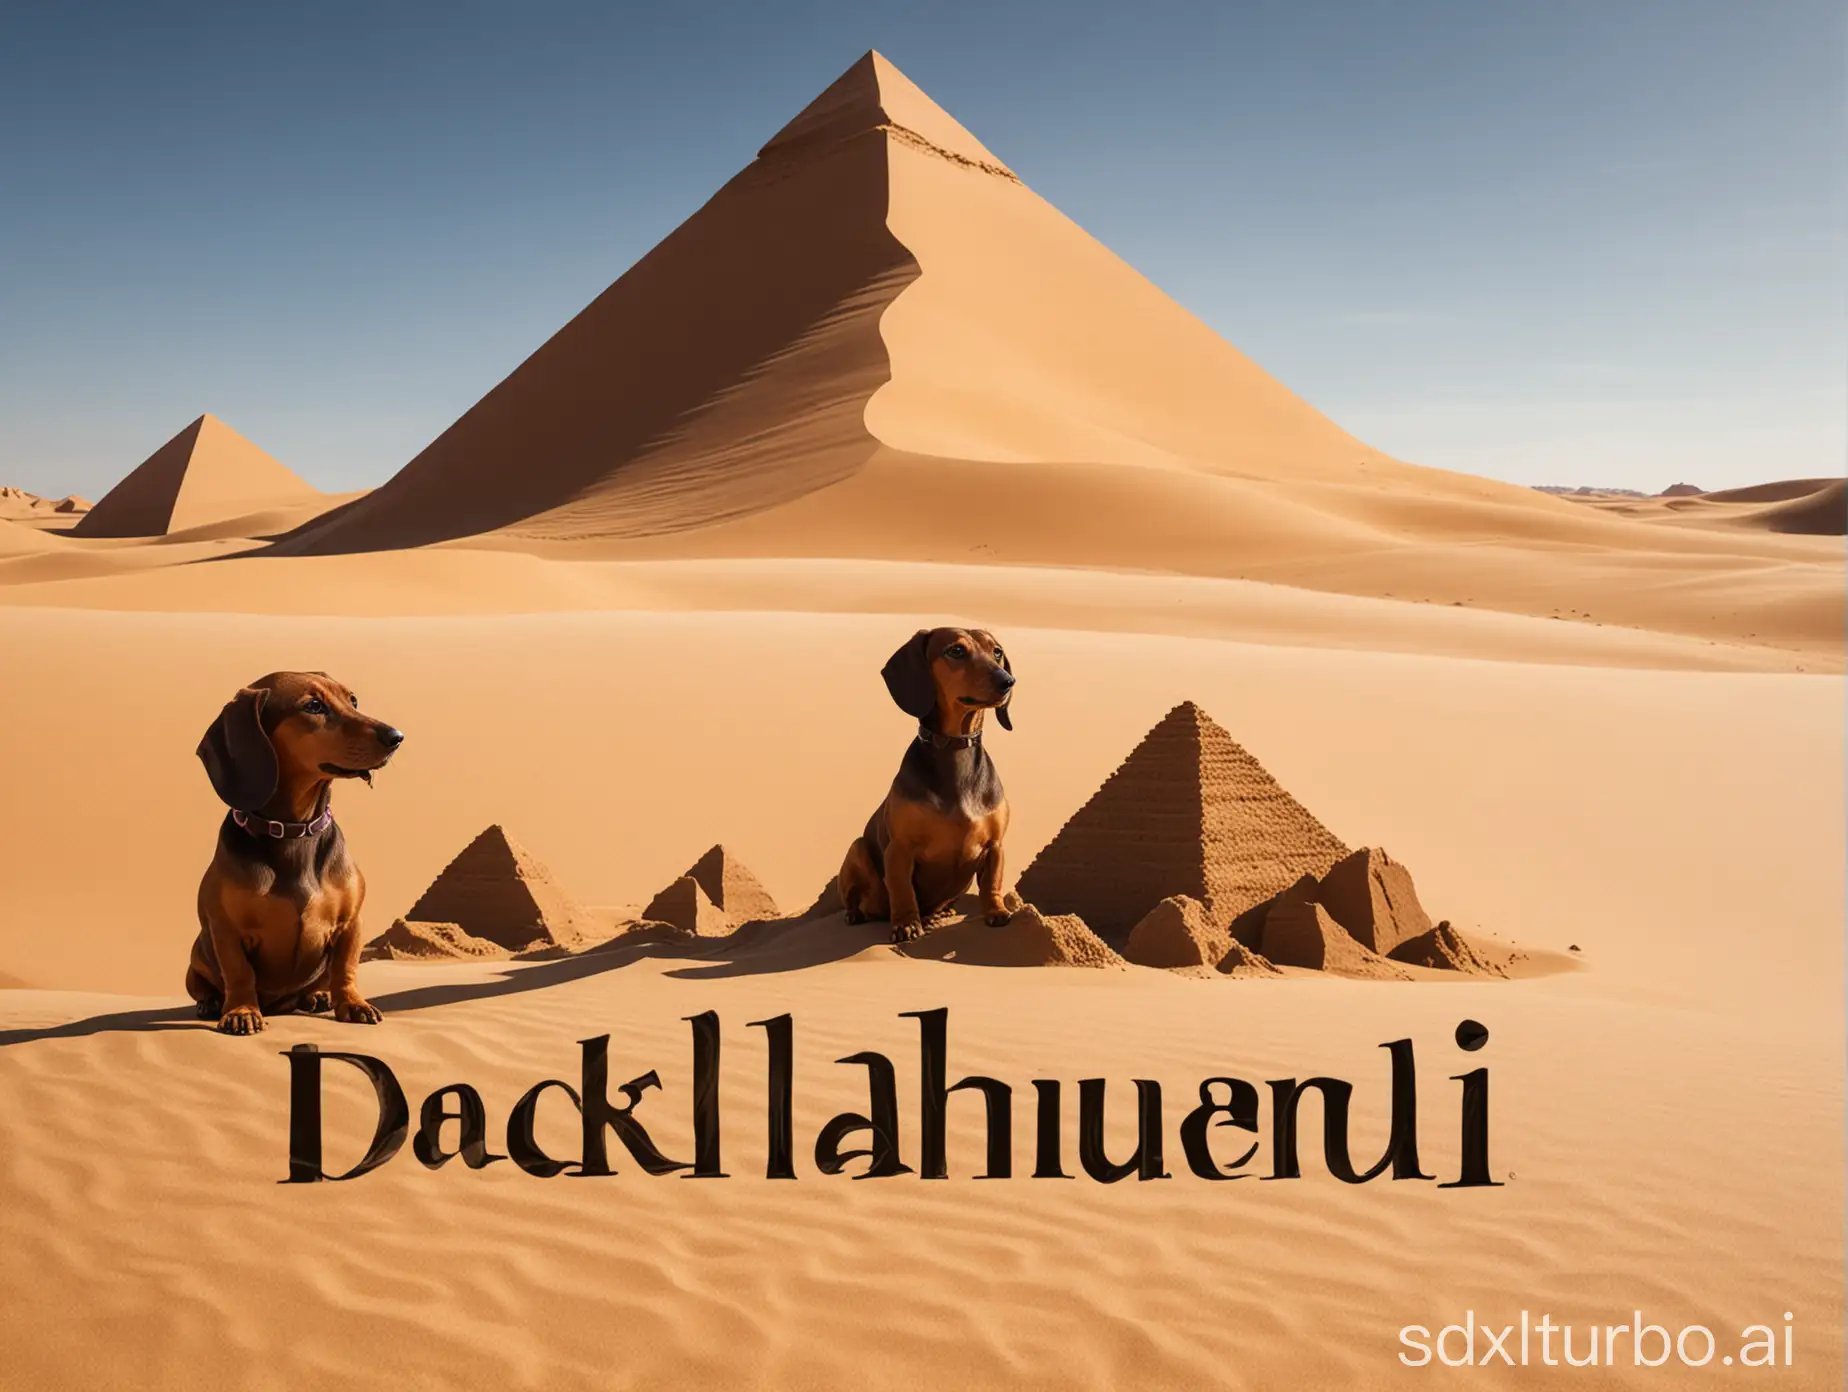 Logotipo de perro teckel, de fondo dunas de arena y pirámides, sombras